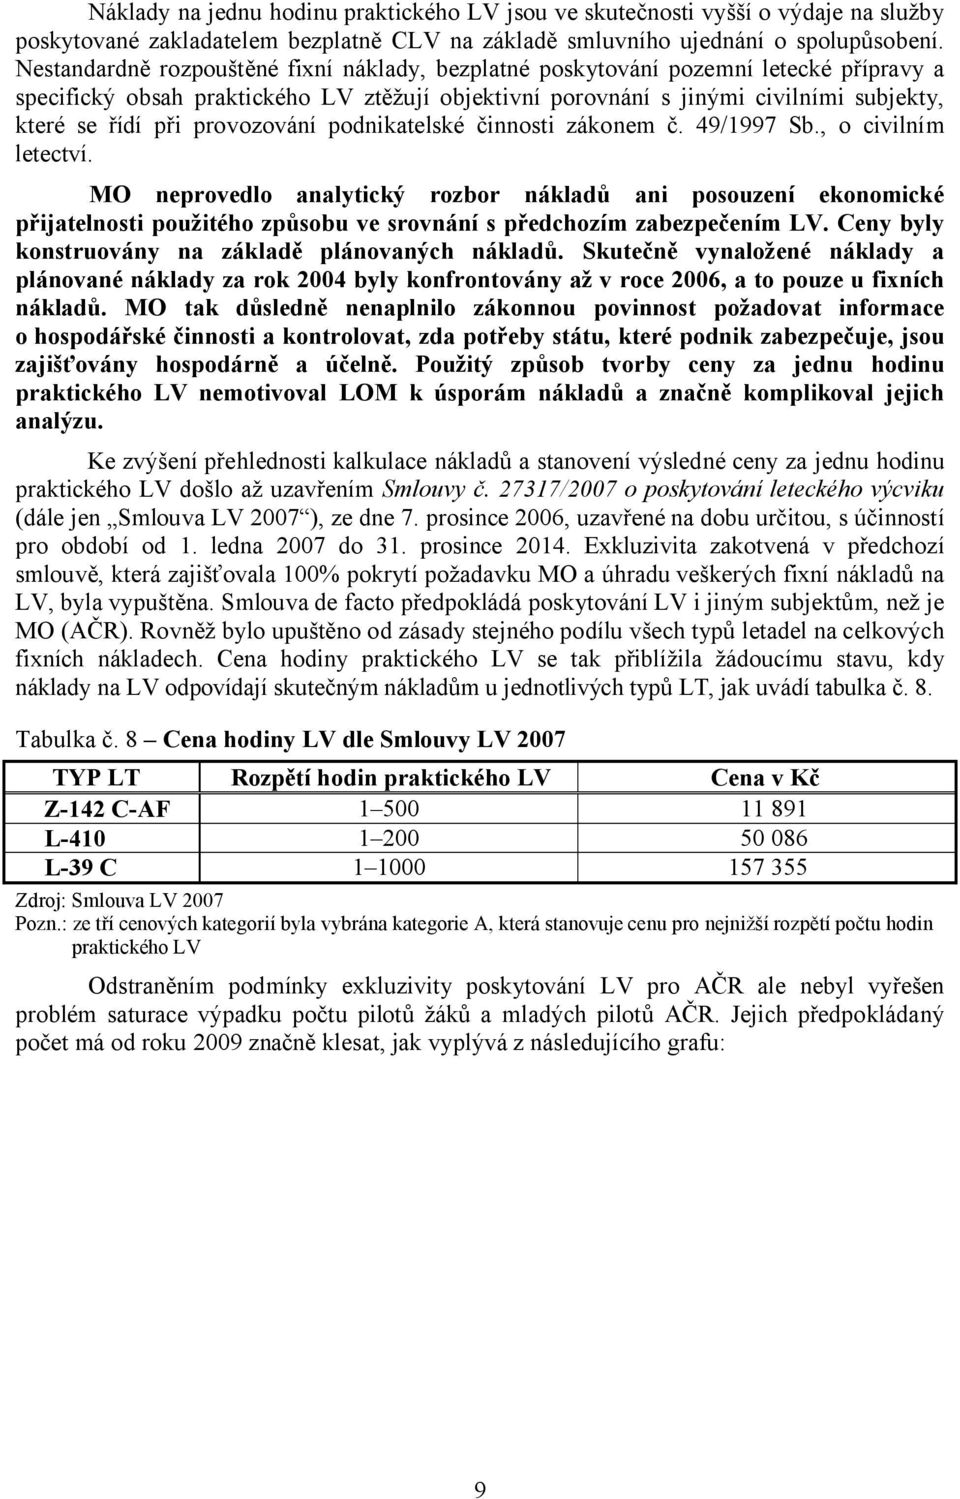 provozování podnikatelské činnosti zákonem č. 49/1997 Sb., o civilním letectví.